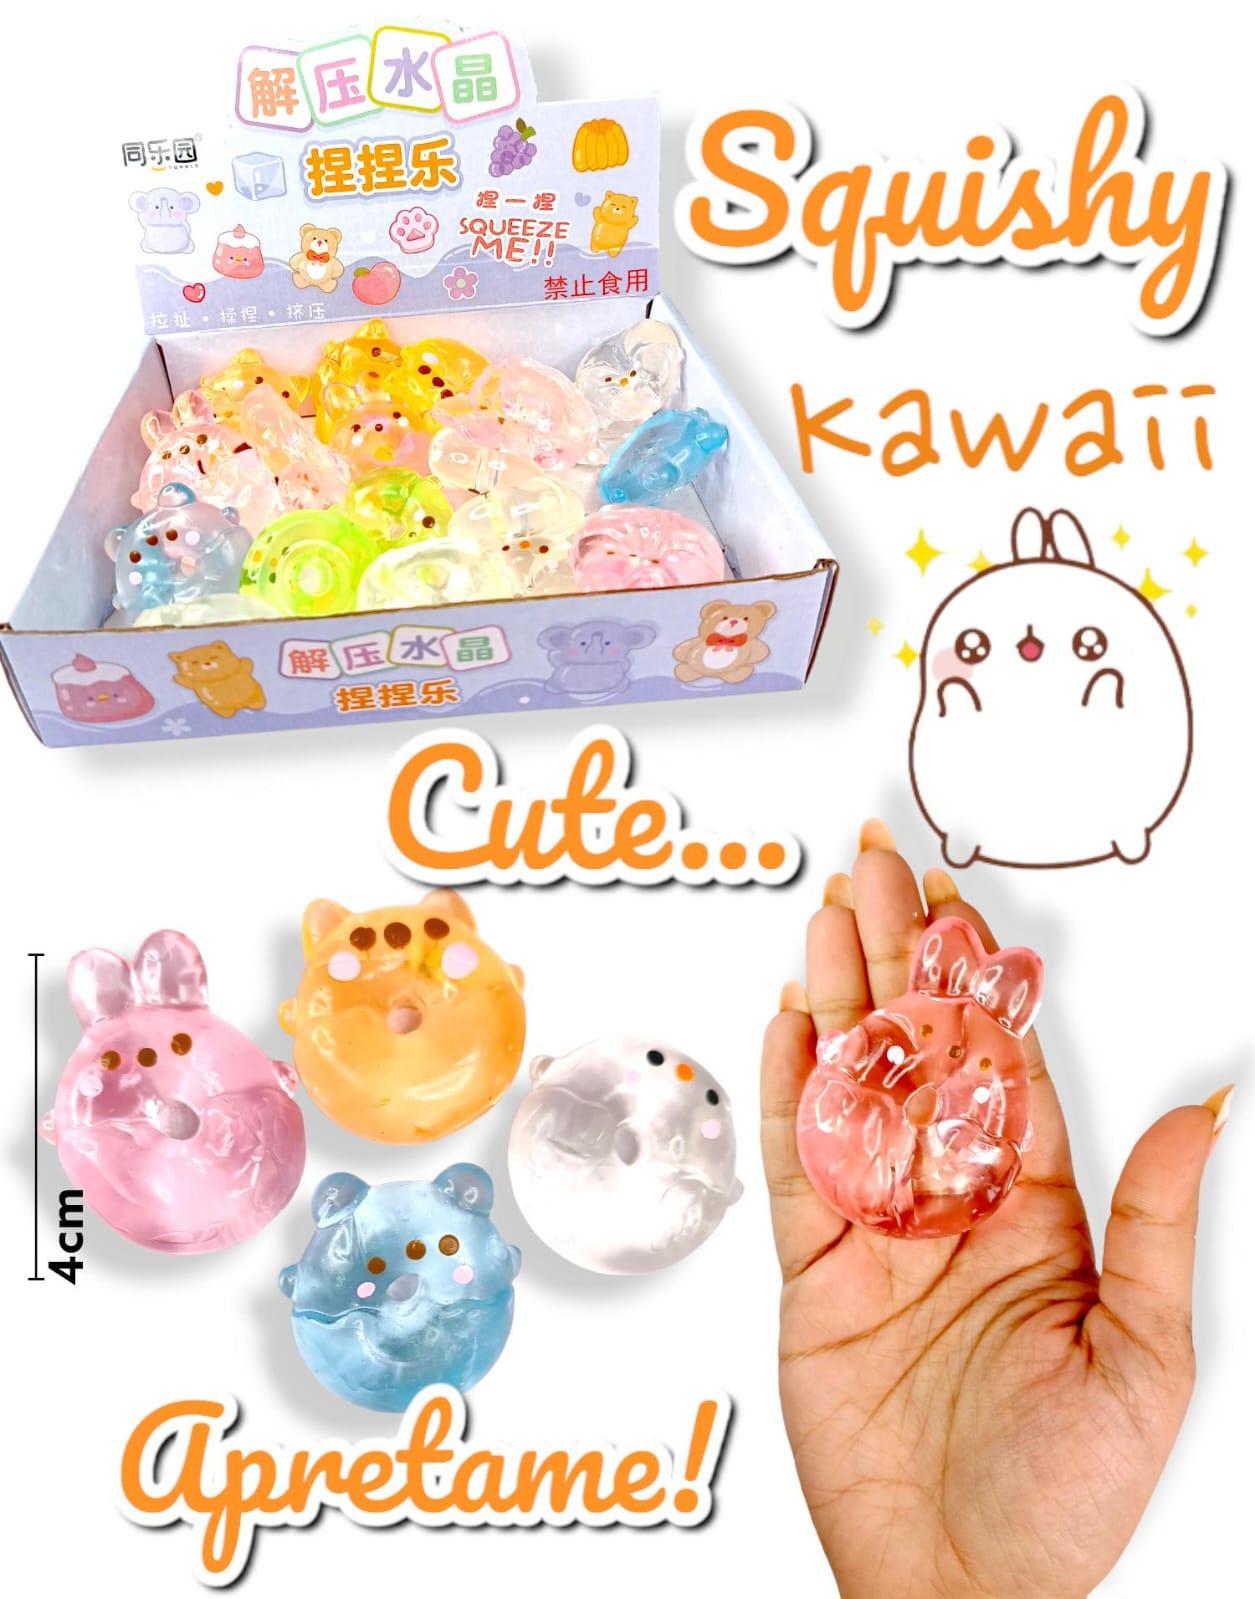 Squishy mochi Kawaii Cute 4cm